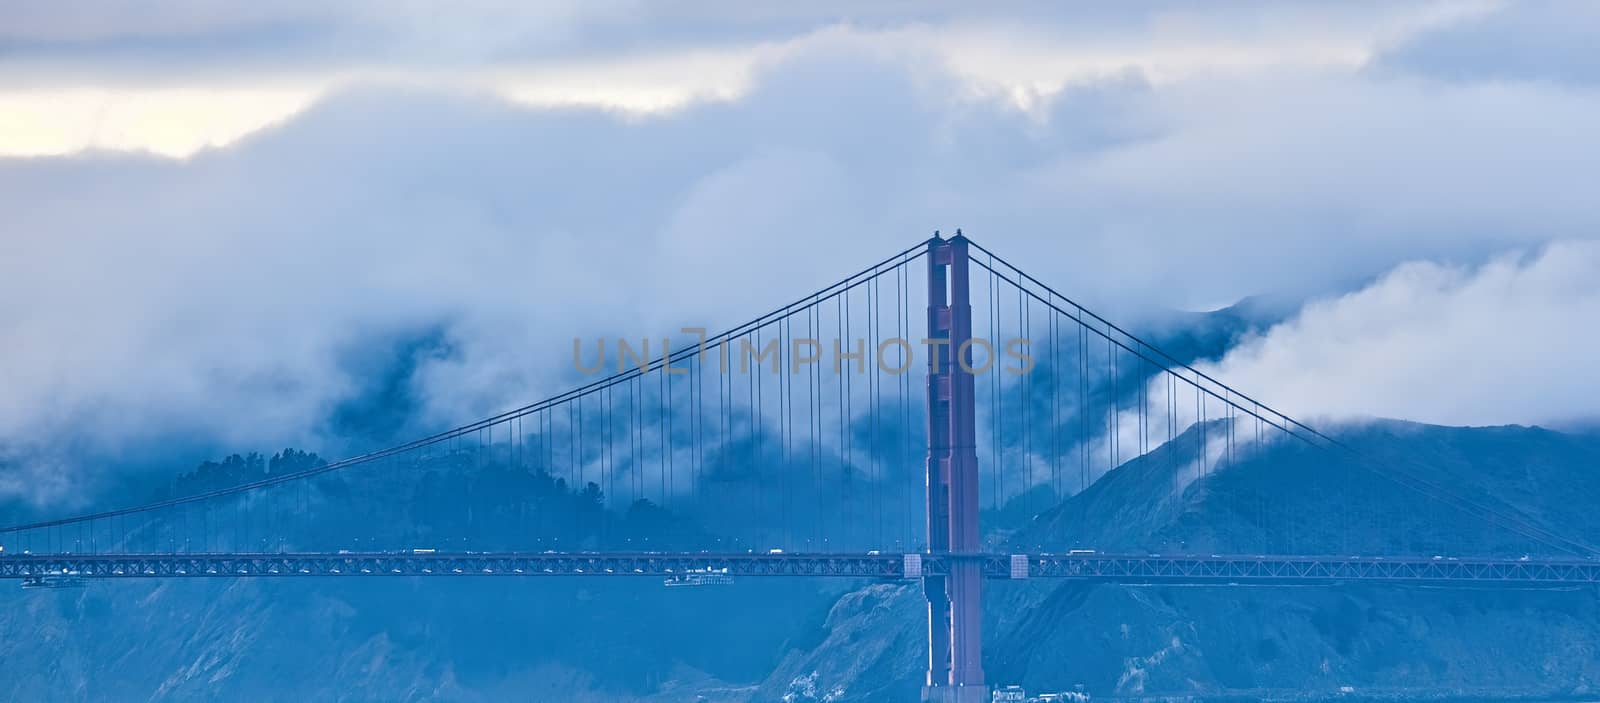 Golden Gate Against Foggy Hills by dbvirago